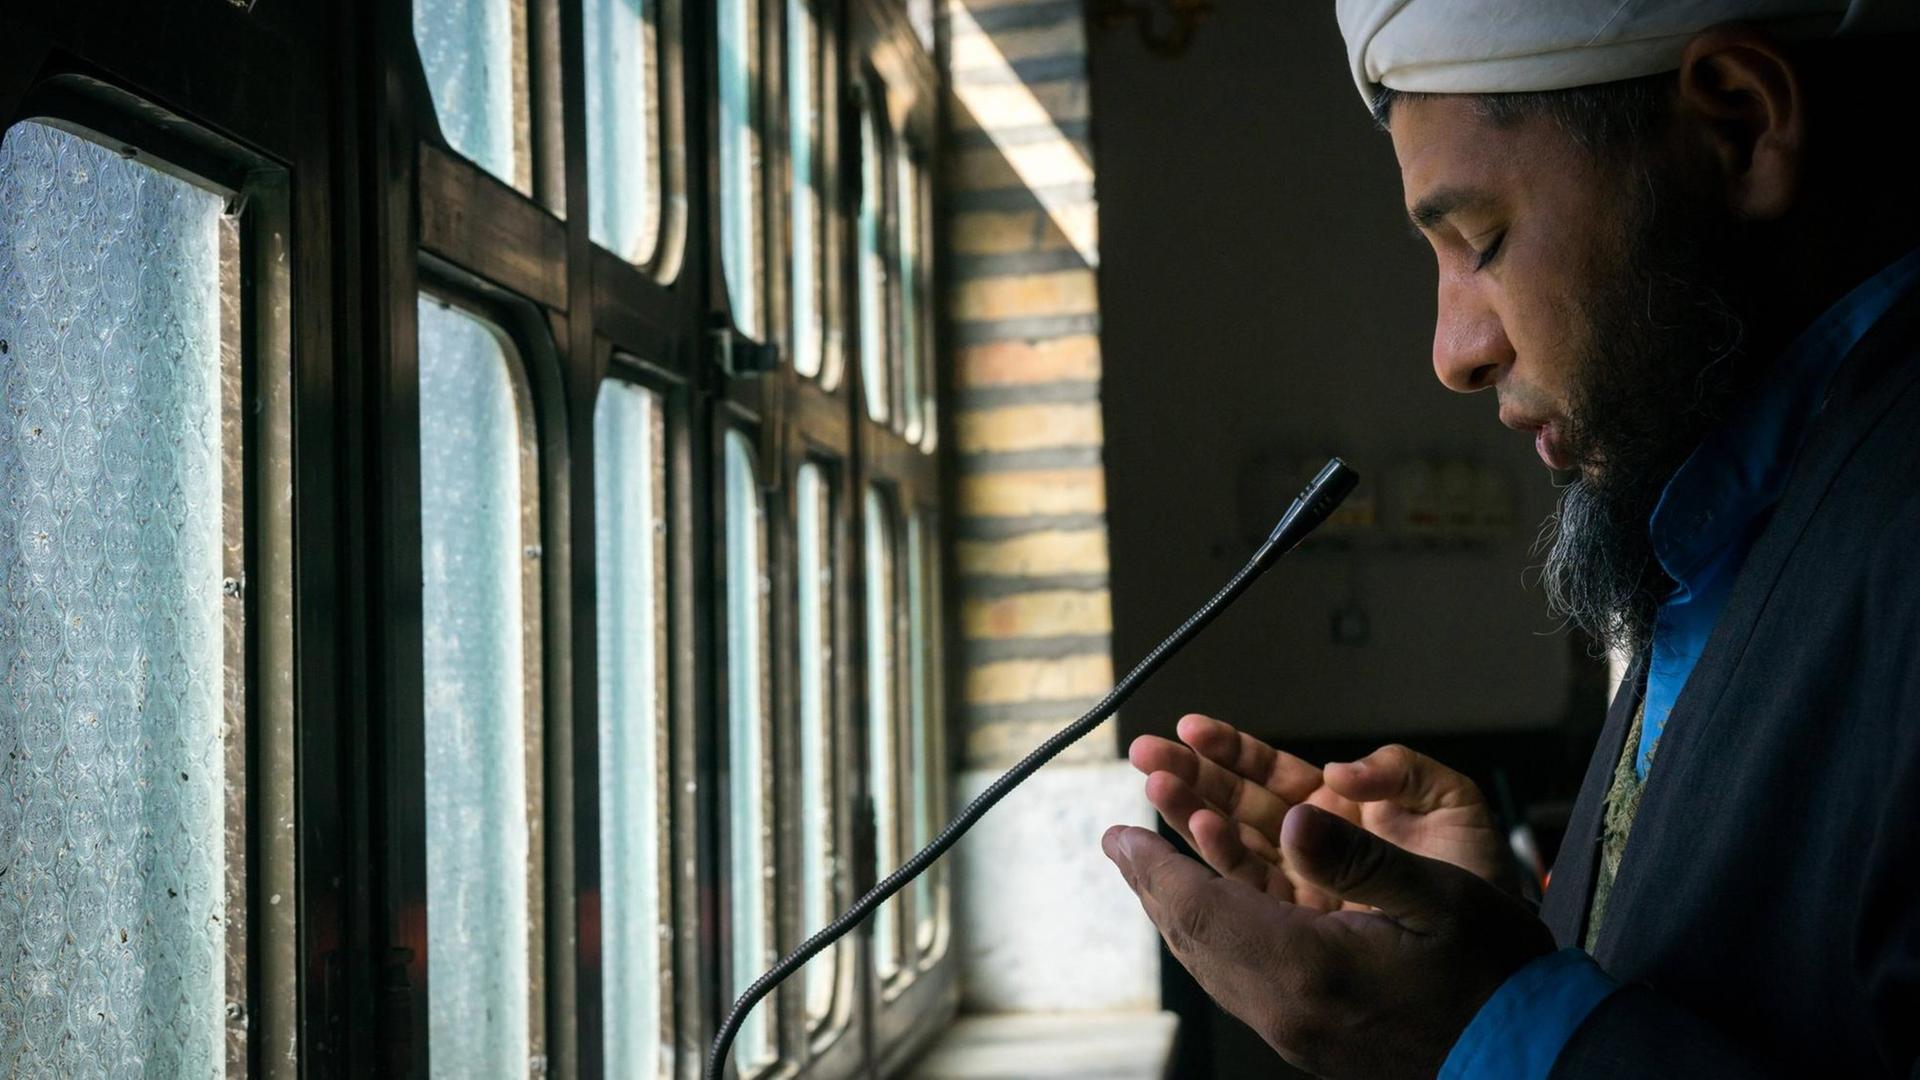 Ein Muezzin ruft über ein Mikrofon zum Gebet auf.